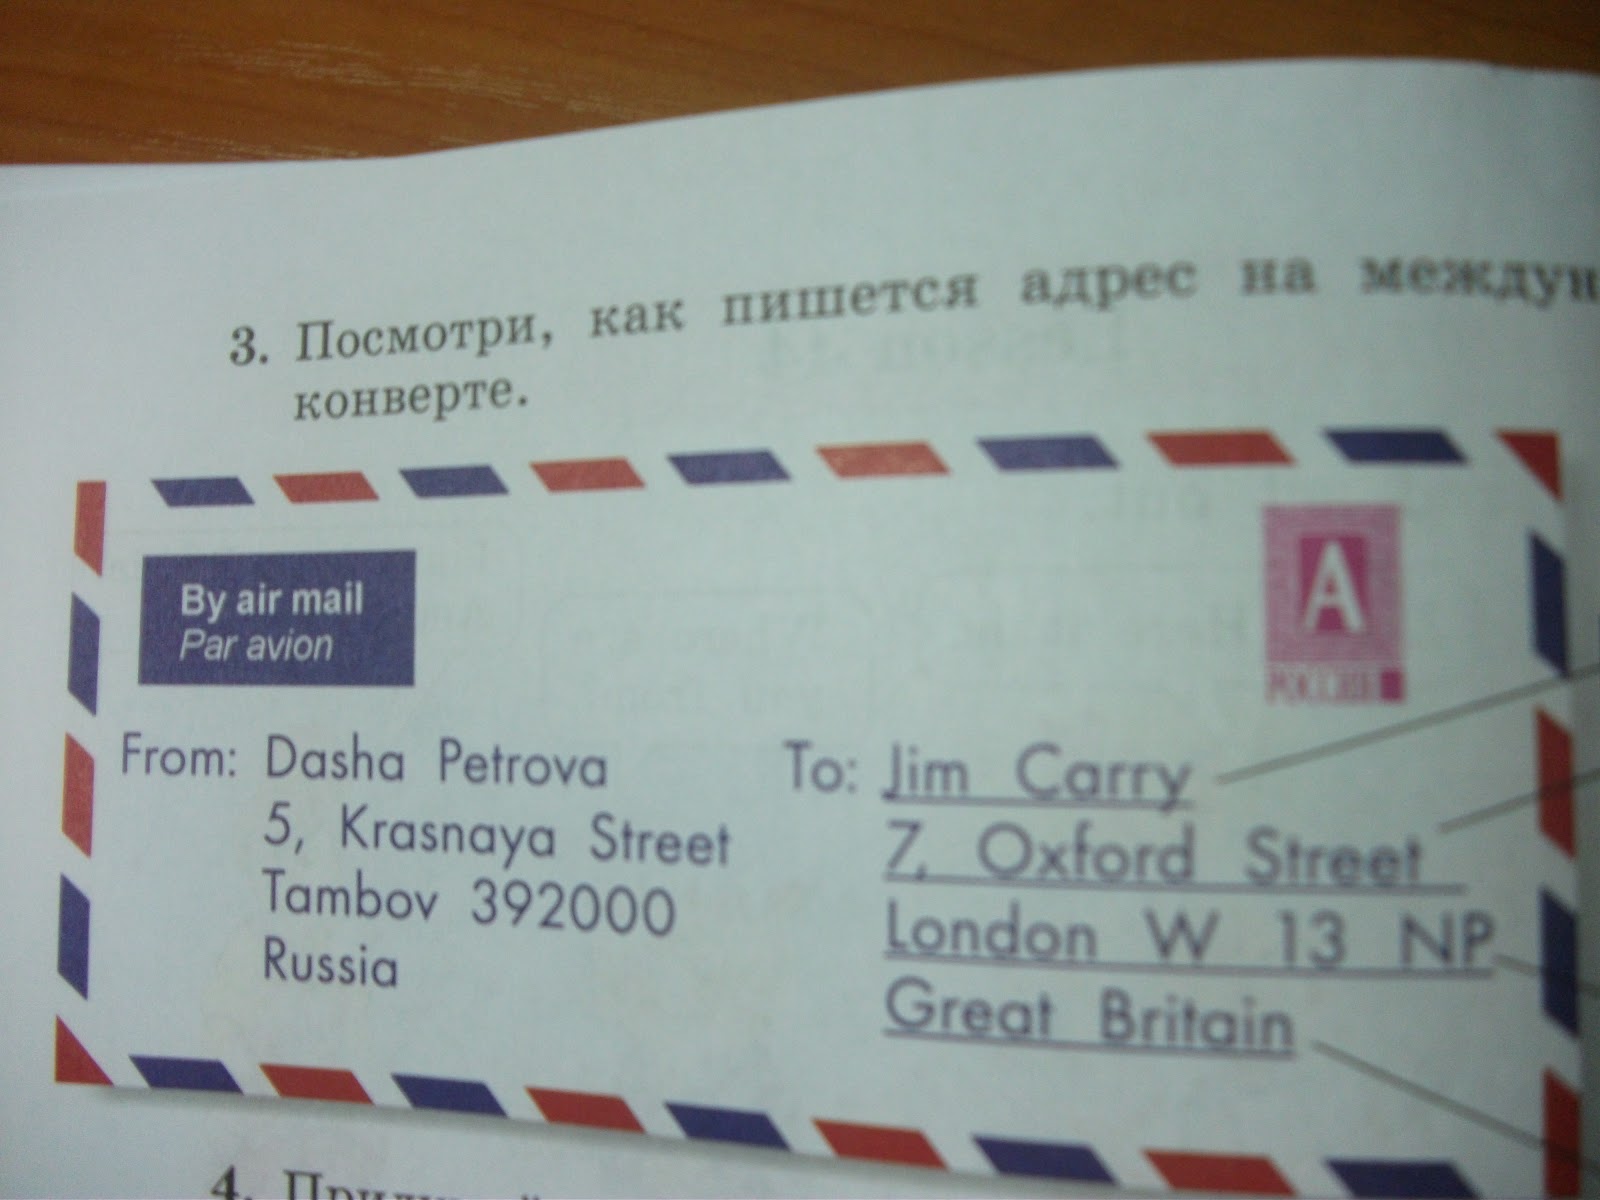 Письмо заграницу. Как написать адрес на конверте. Письмо из Турции. Конверт за границу. Написать адрес на конверте за границу.